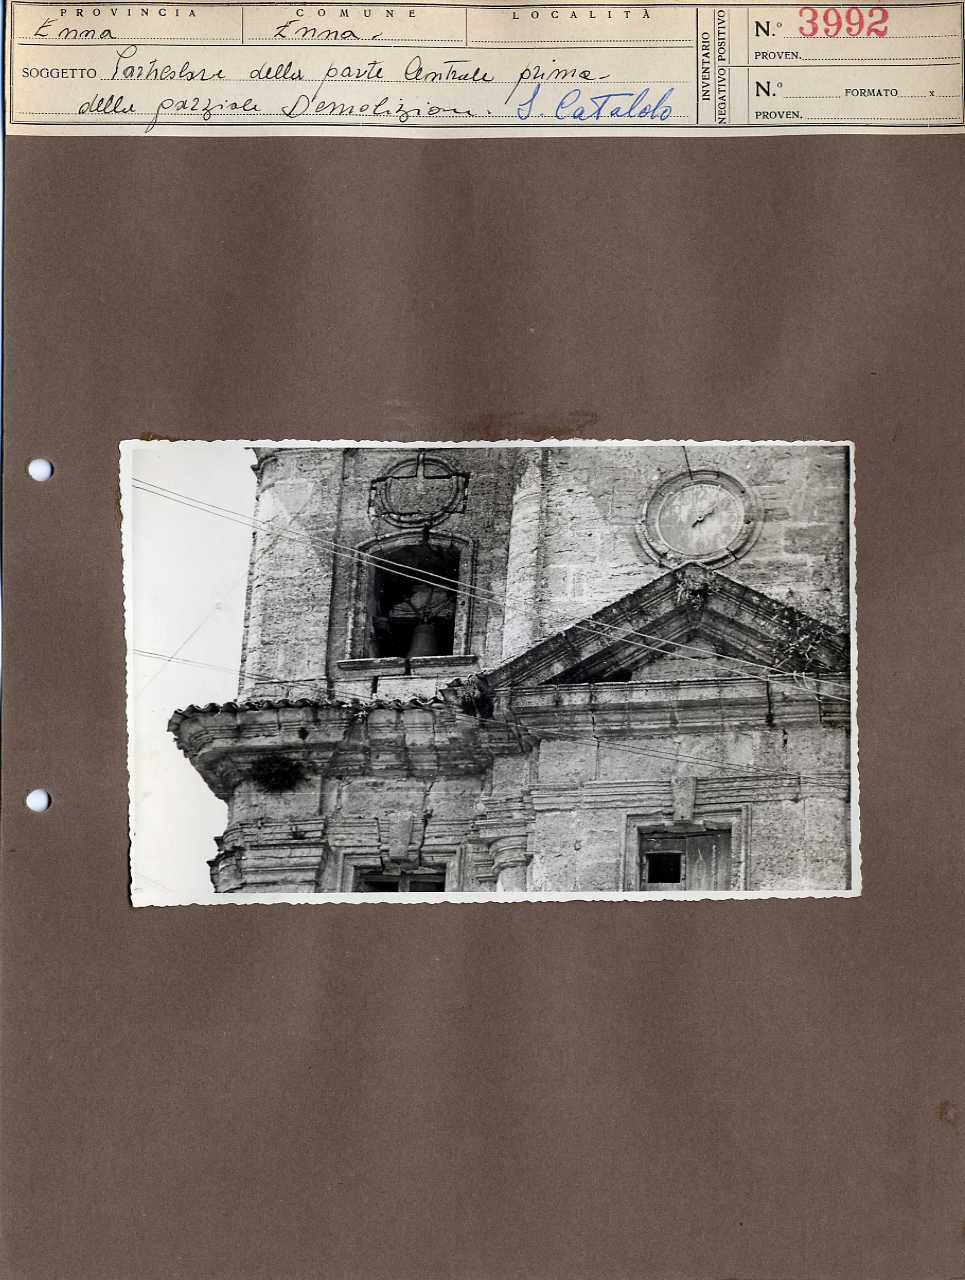 Sicilia - Enna - Architettura religiosa - Chiesa di San Cataldo (positivo, elemento-parte componente, scheda di supporto) di Anonimo <1945 - 1955> (metà XX)